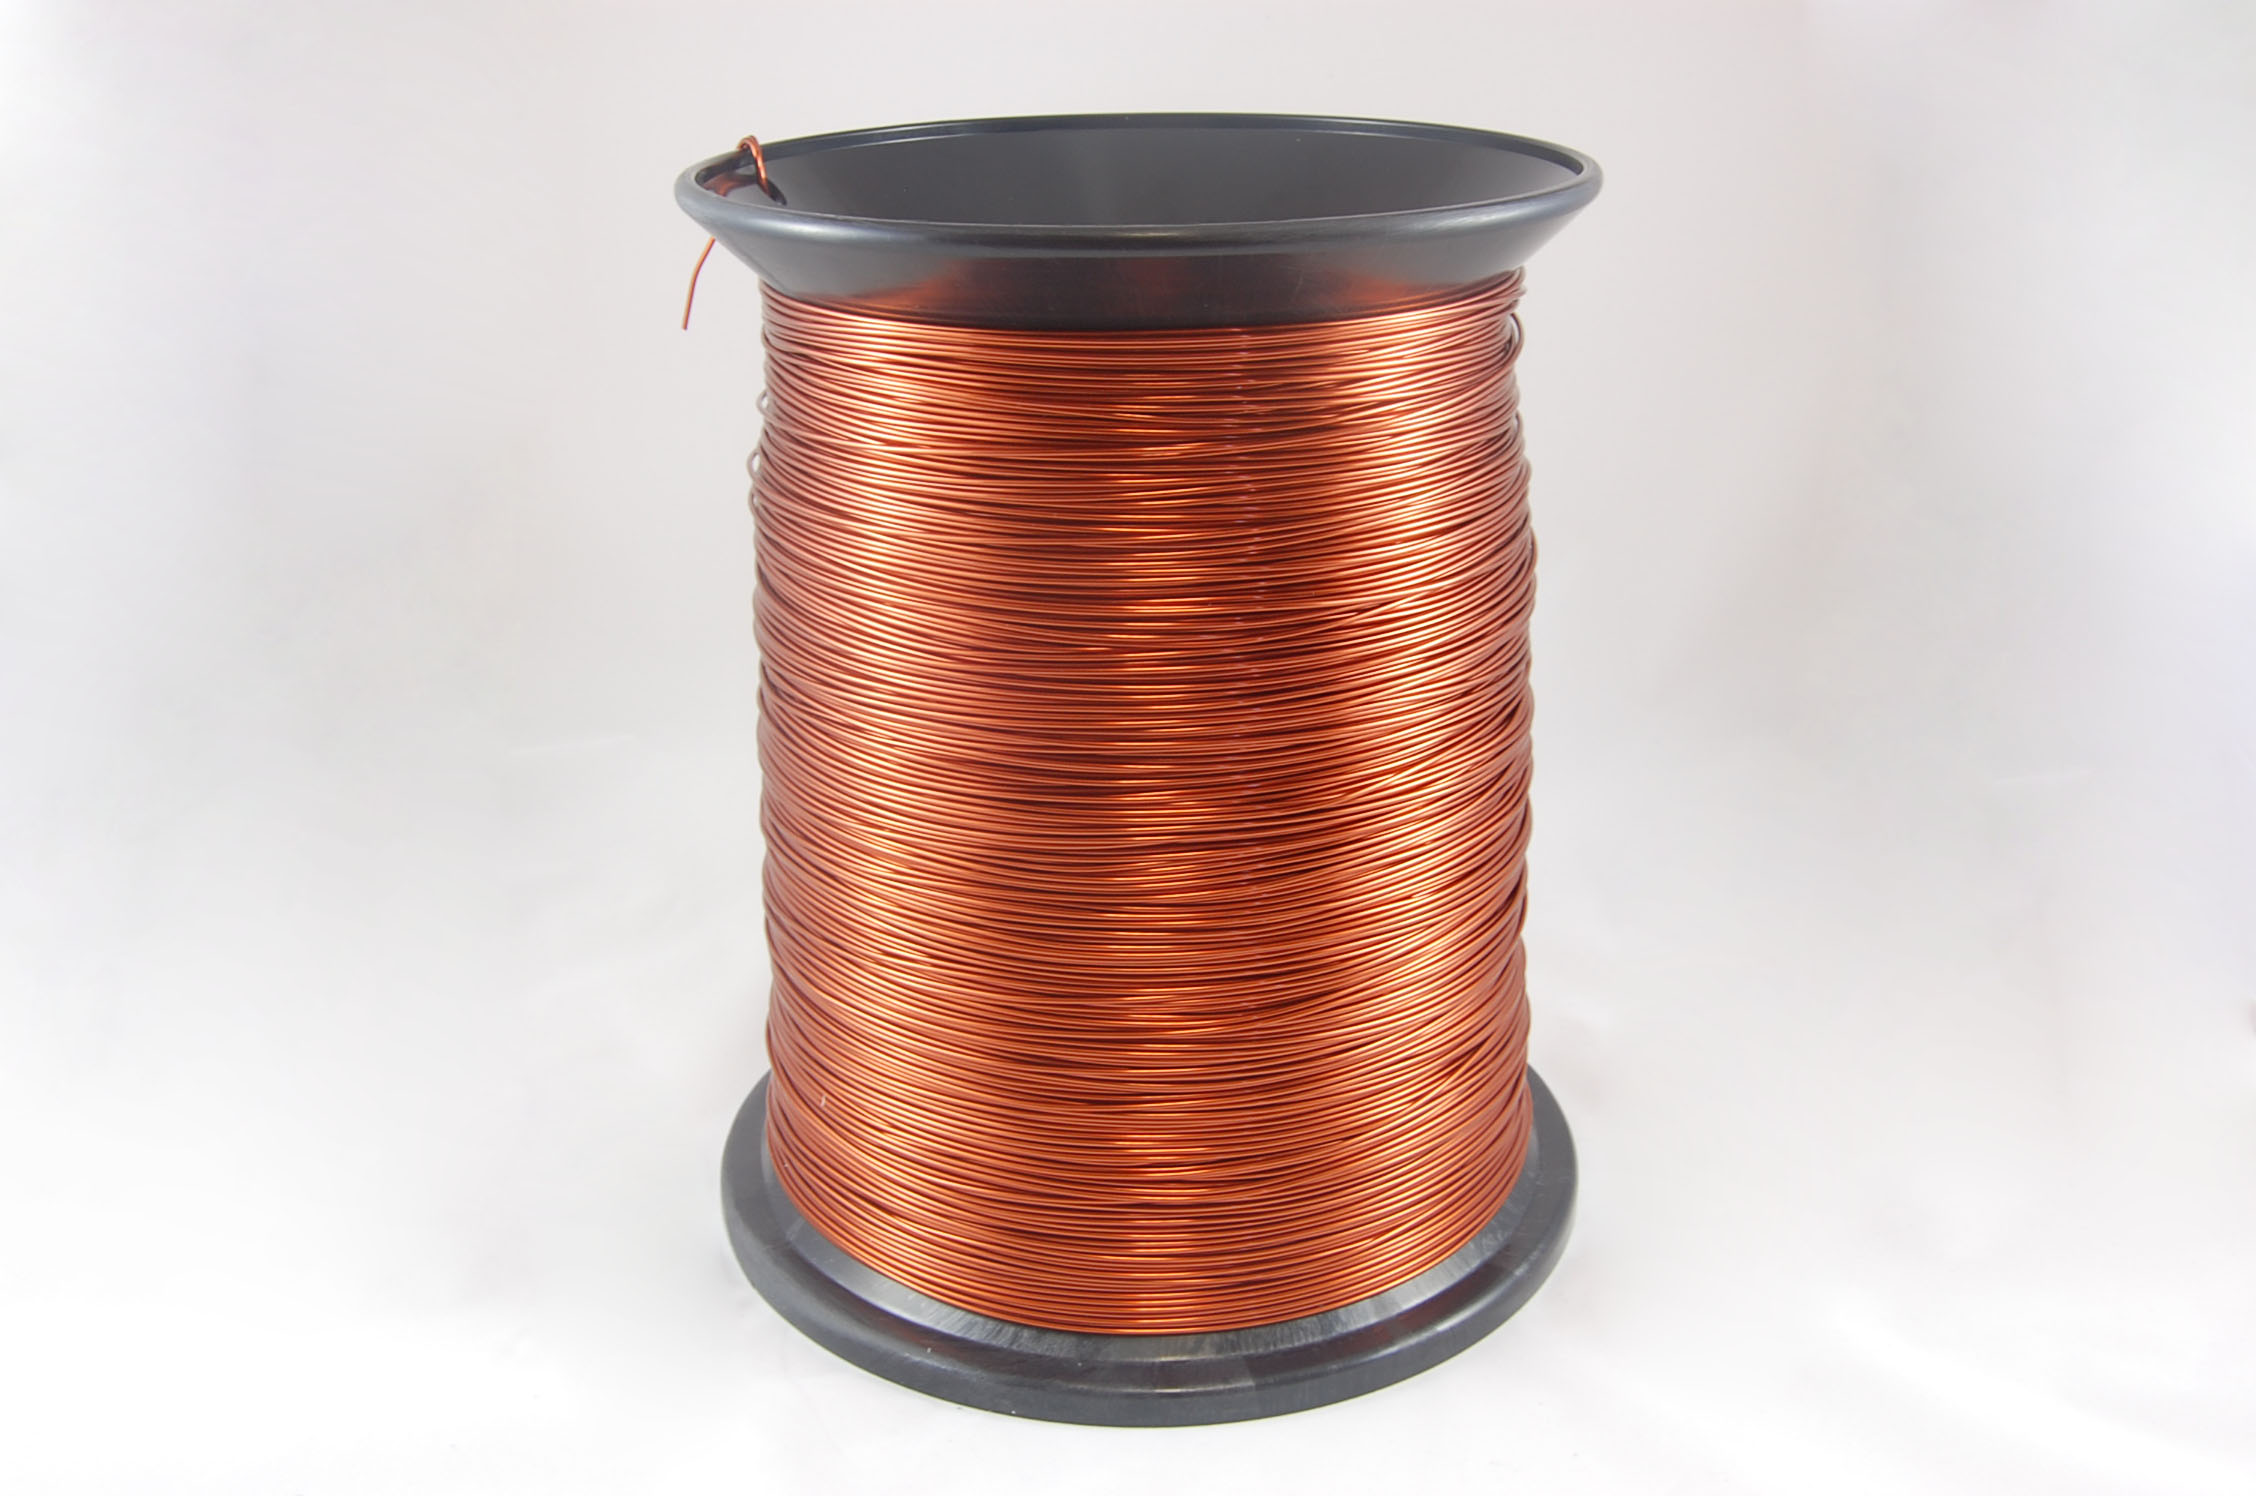 #19 Heavy GP/MR-200 Round MW 35 Copper Magnet Wire 200°C, copper, 85 LB box (average wght.)